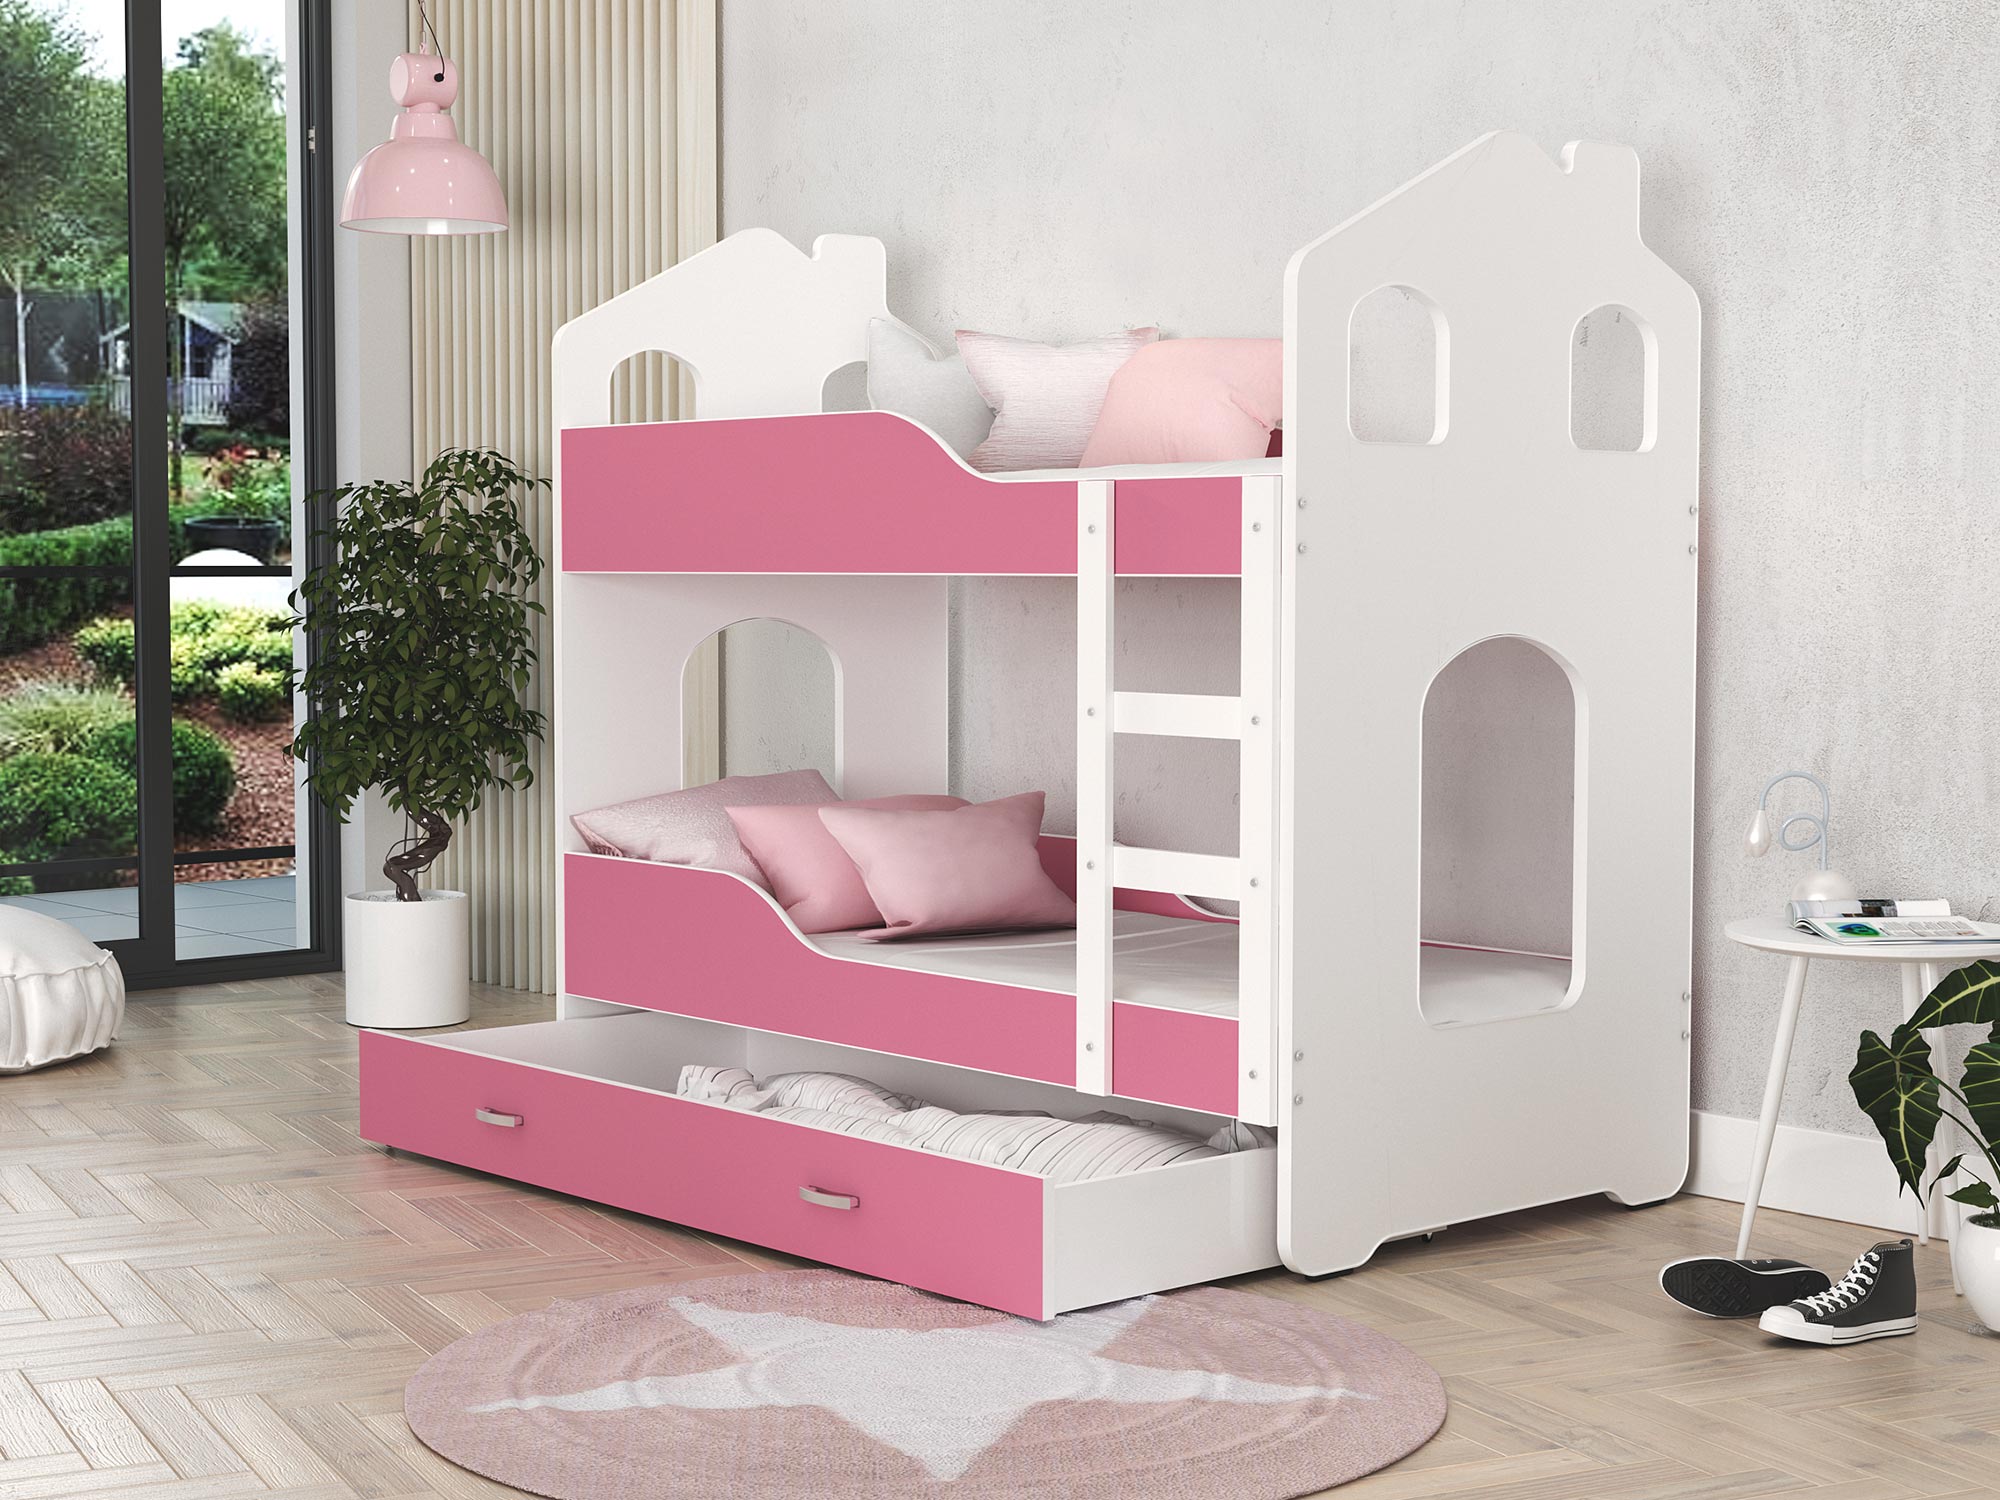 Łóżko domek dla dzieci biało-różowe aranż FIROME